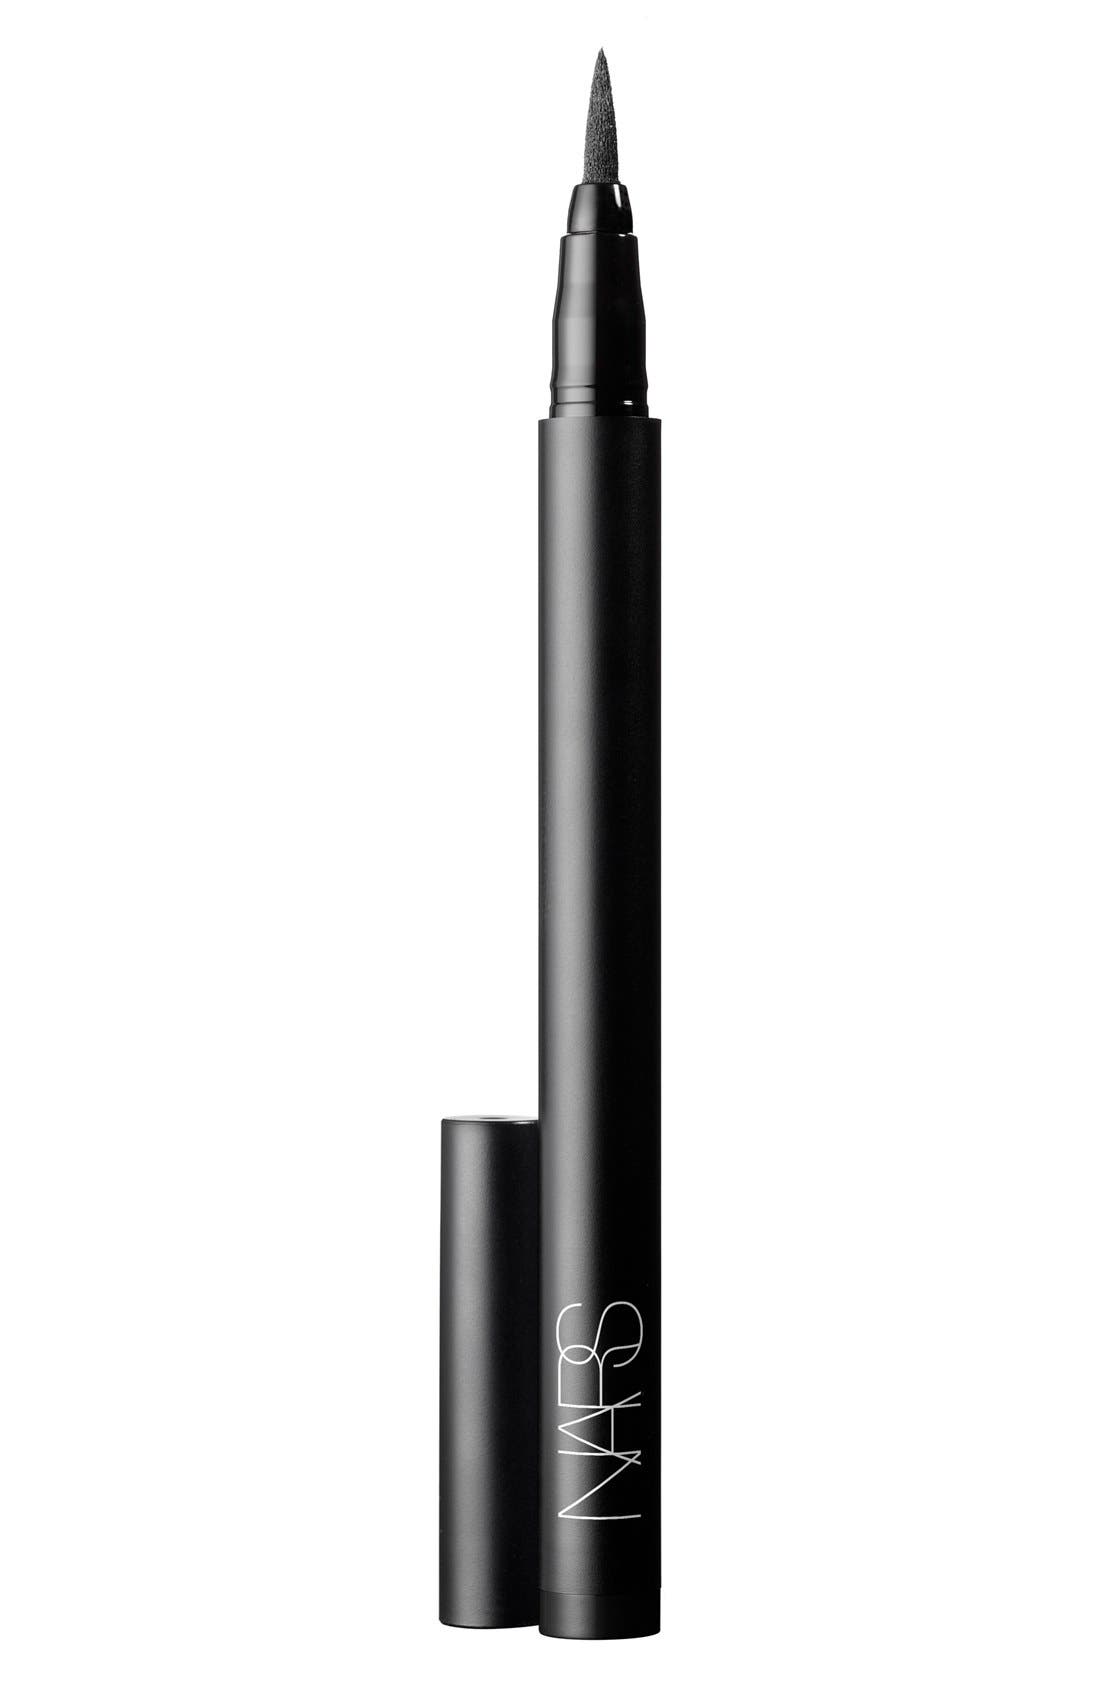 UPC 607845081265 product image for Nars Stylo Liquid Eyeliner - Carpates | upcitemdb.com